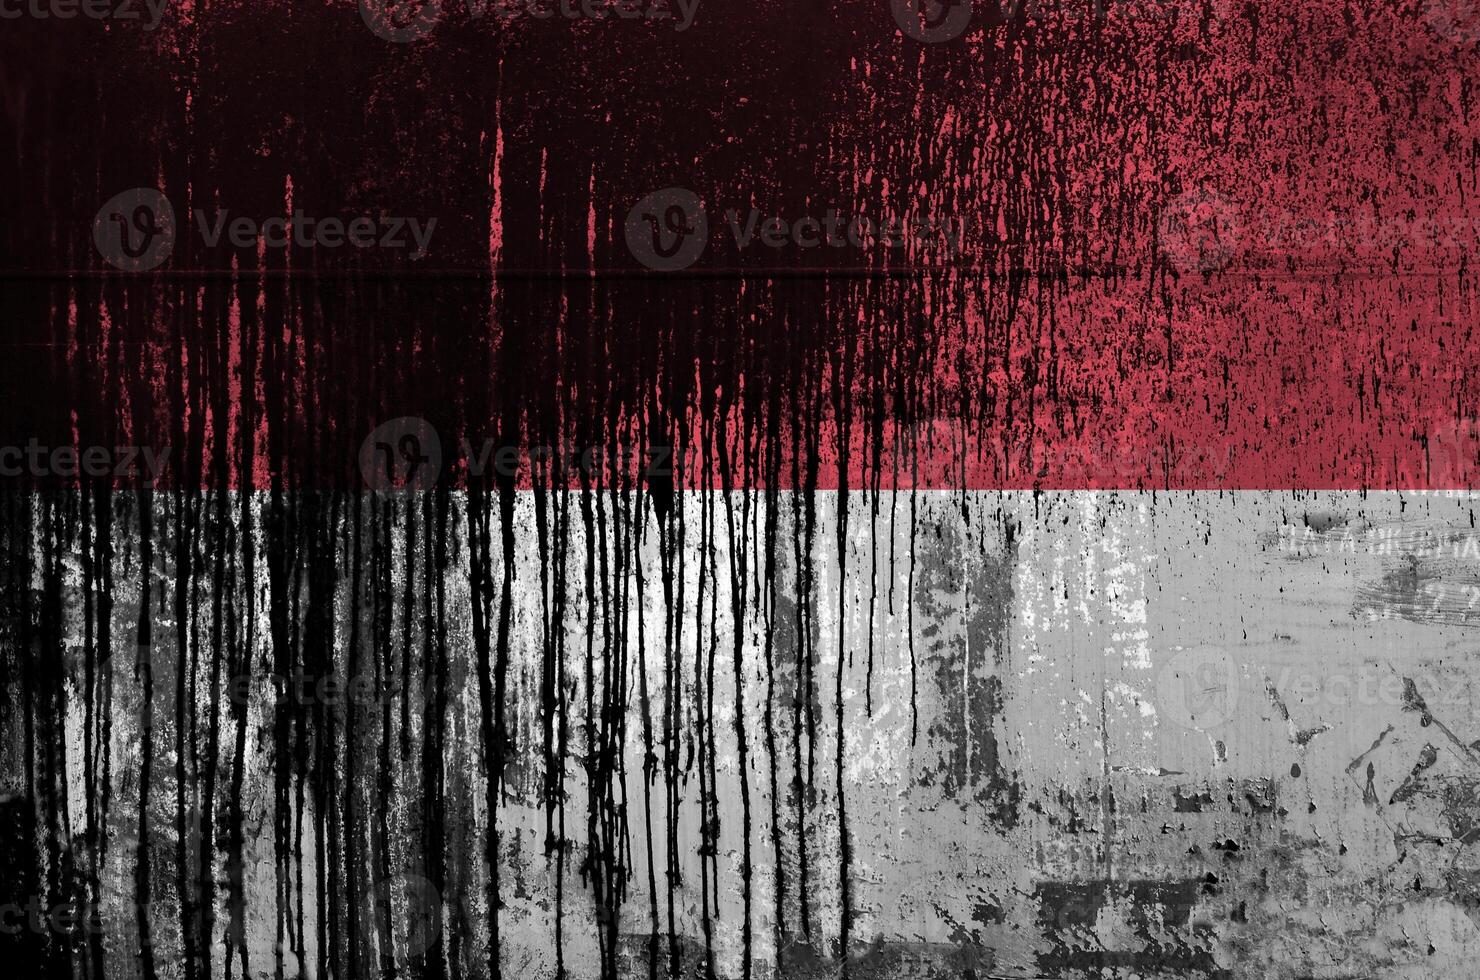 indonesien flagga avbildad i måla färger på gammal och smutsig olja tunna vägg närbild. texturerad baner på grov bakgrund foto